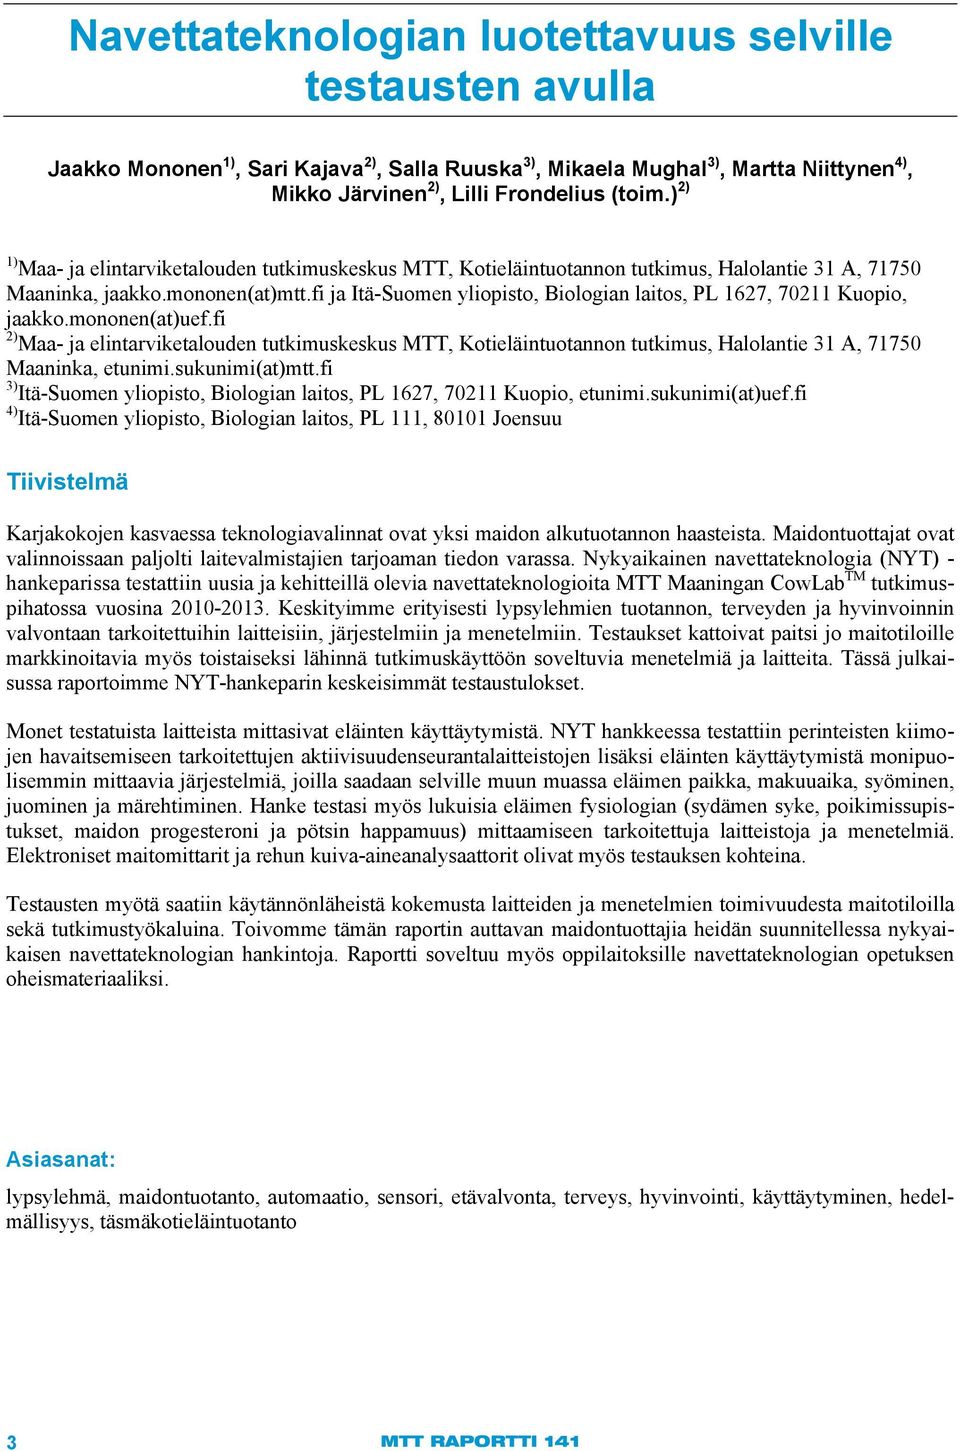 fi ja Itä-Suomen yliopisto, Biologian laitos, PL 1627, 70211 Kuopio, jaakko.mononen(at)uef.